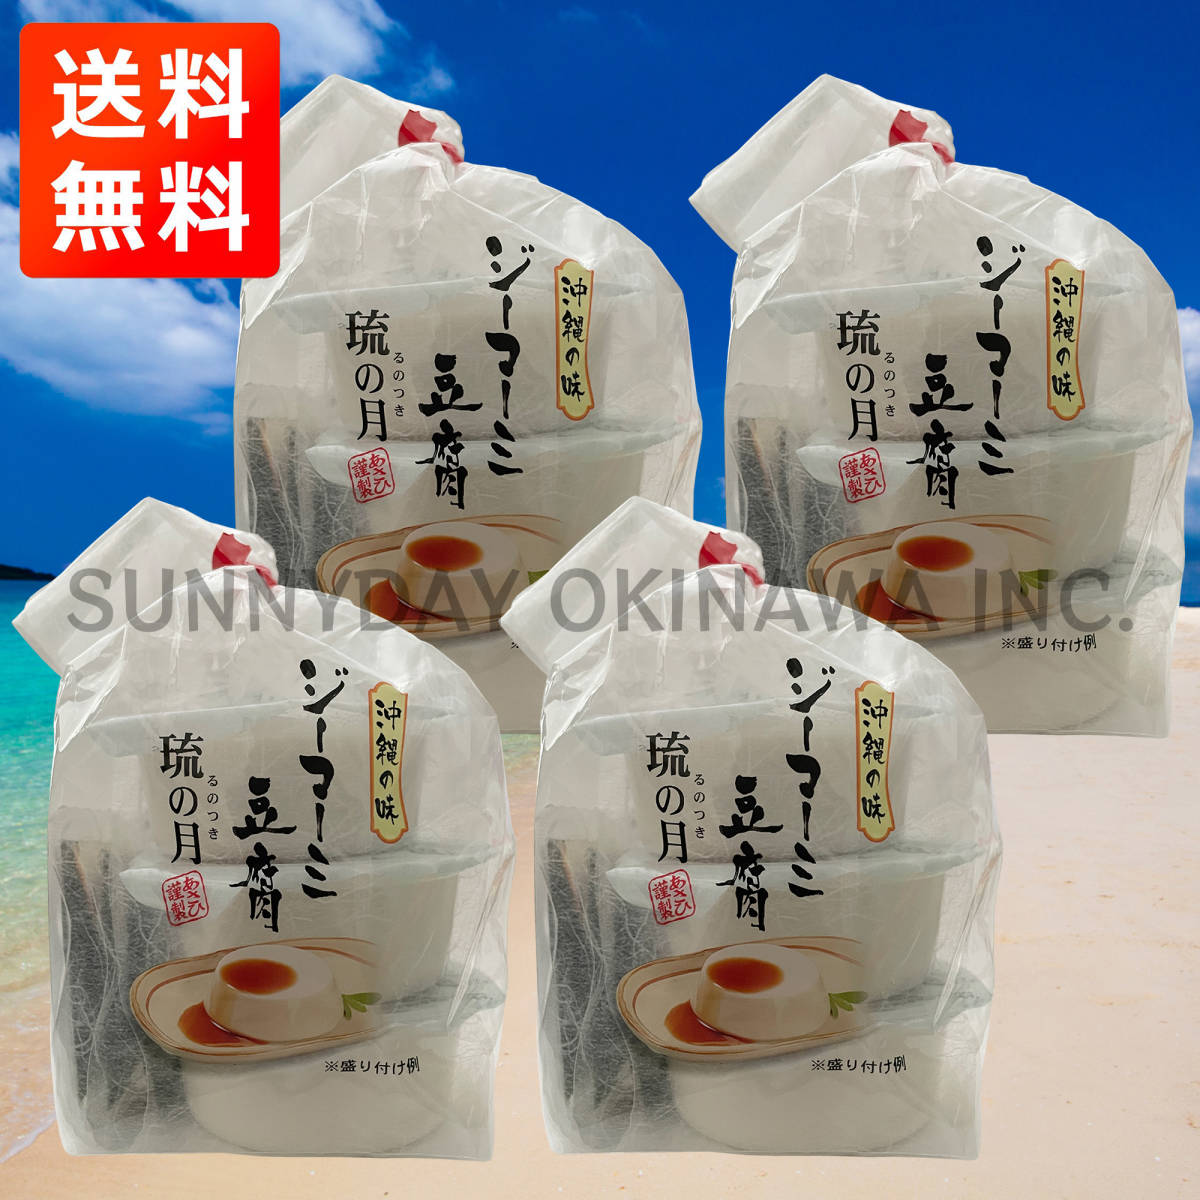  Okinawa. тест ji-ma-mi тофу .. месяц 4 пакет 12 cup обычная температура модель ... качественный продукт . земля производство ваш заказ 